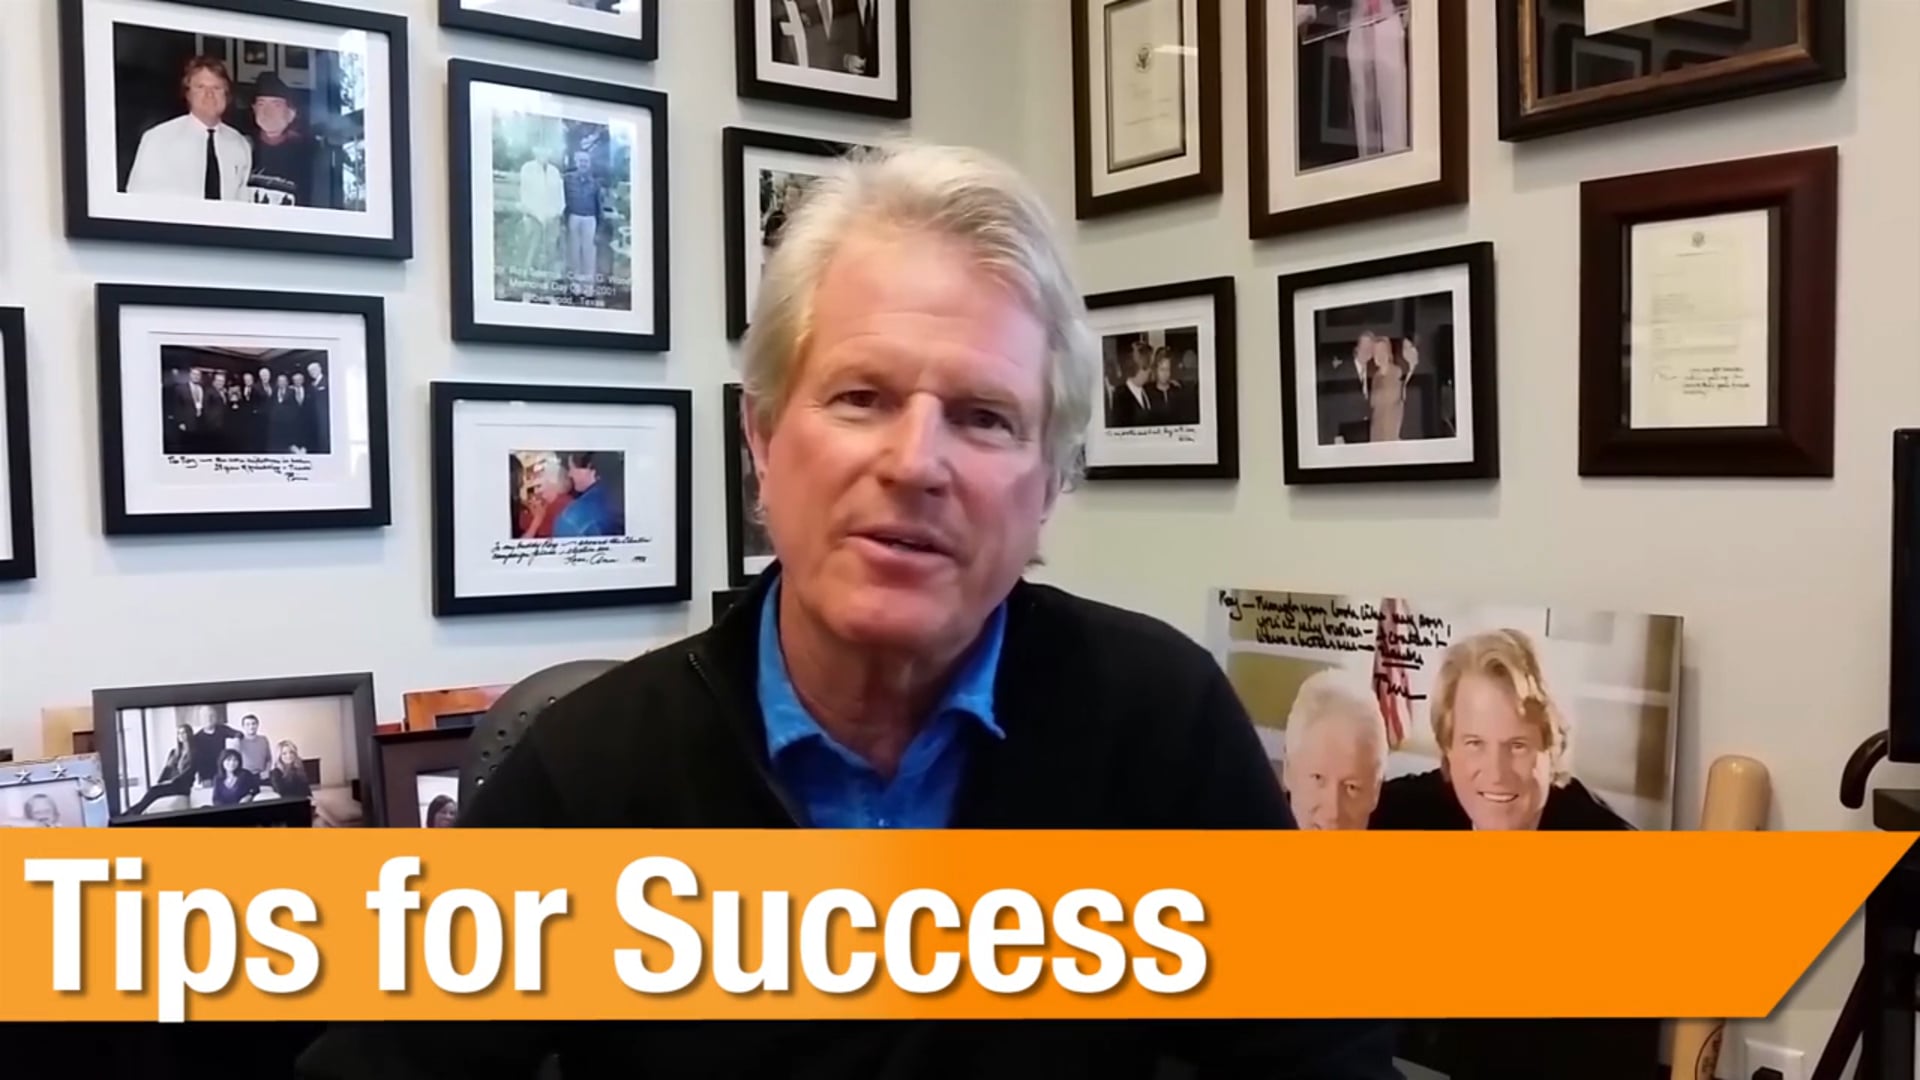 Tips for Success - Entrepreneur - Roy Spence